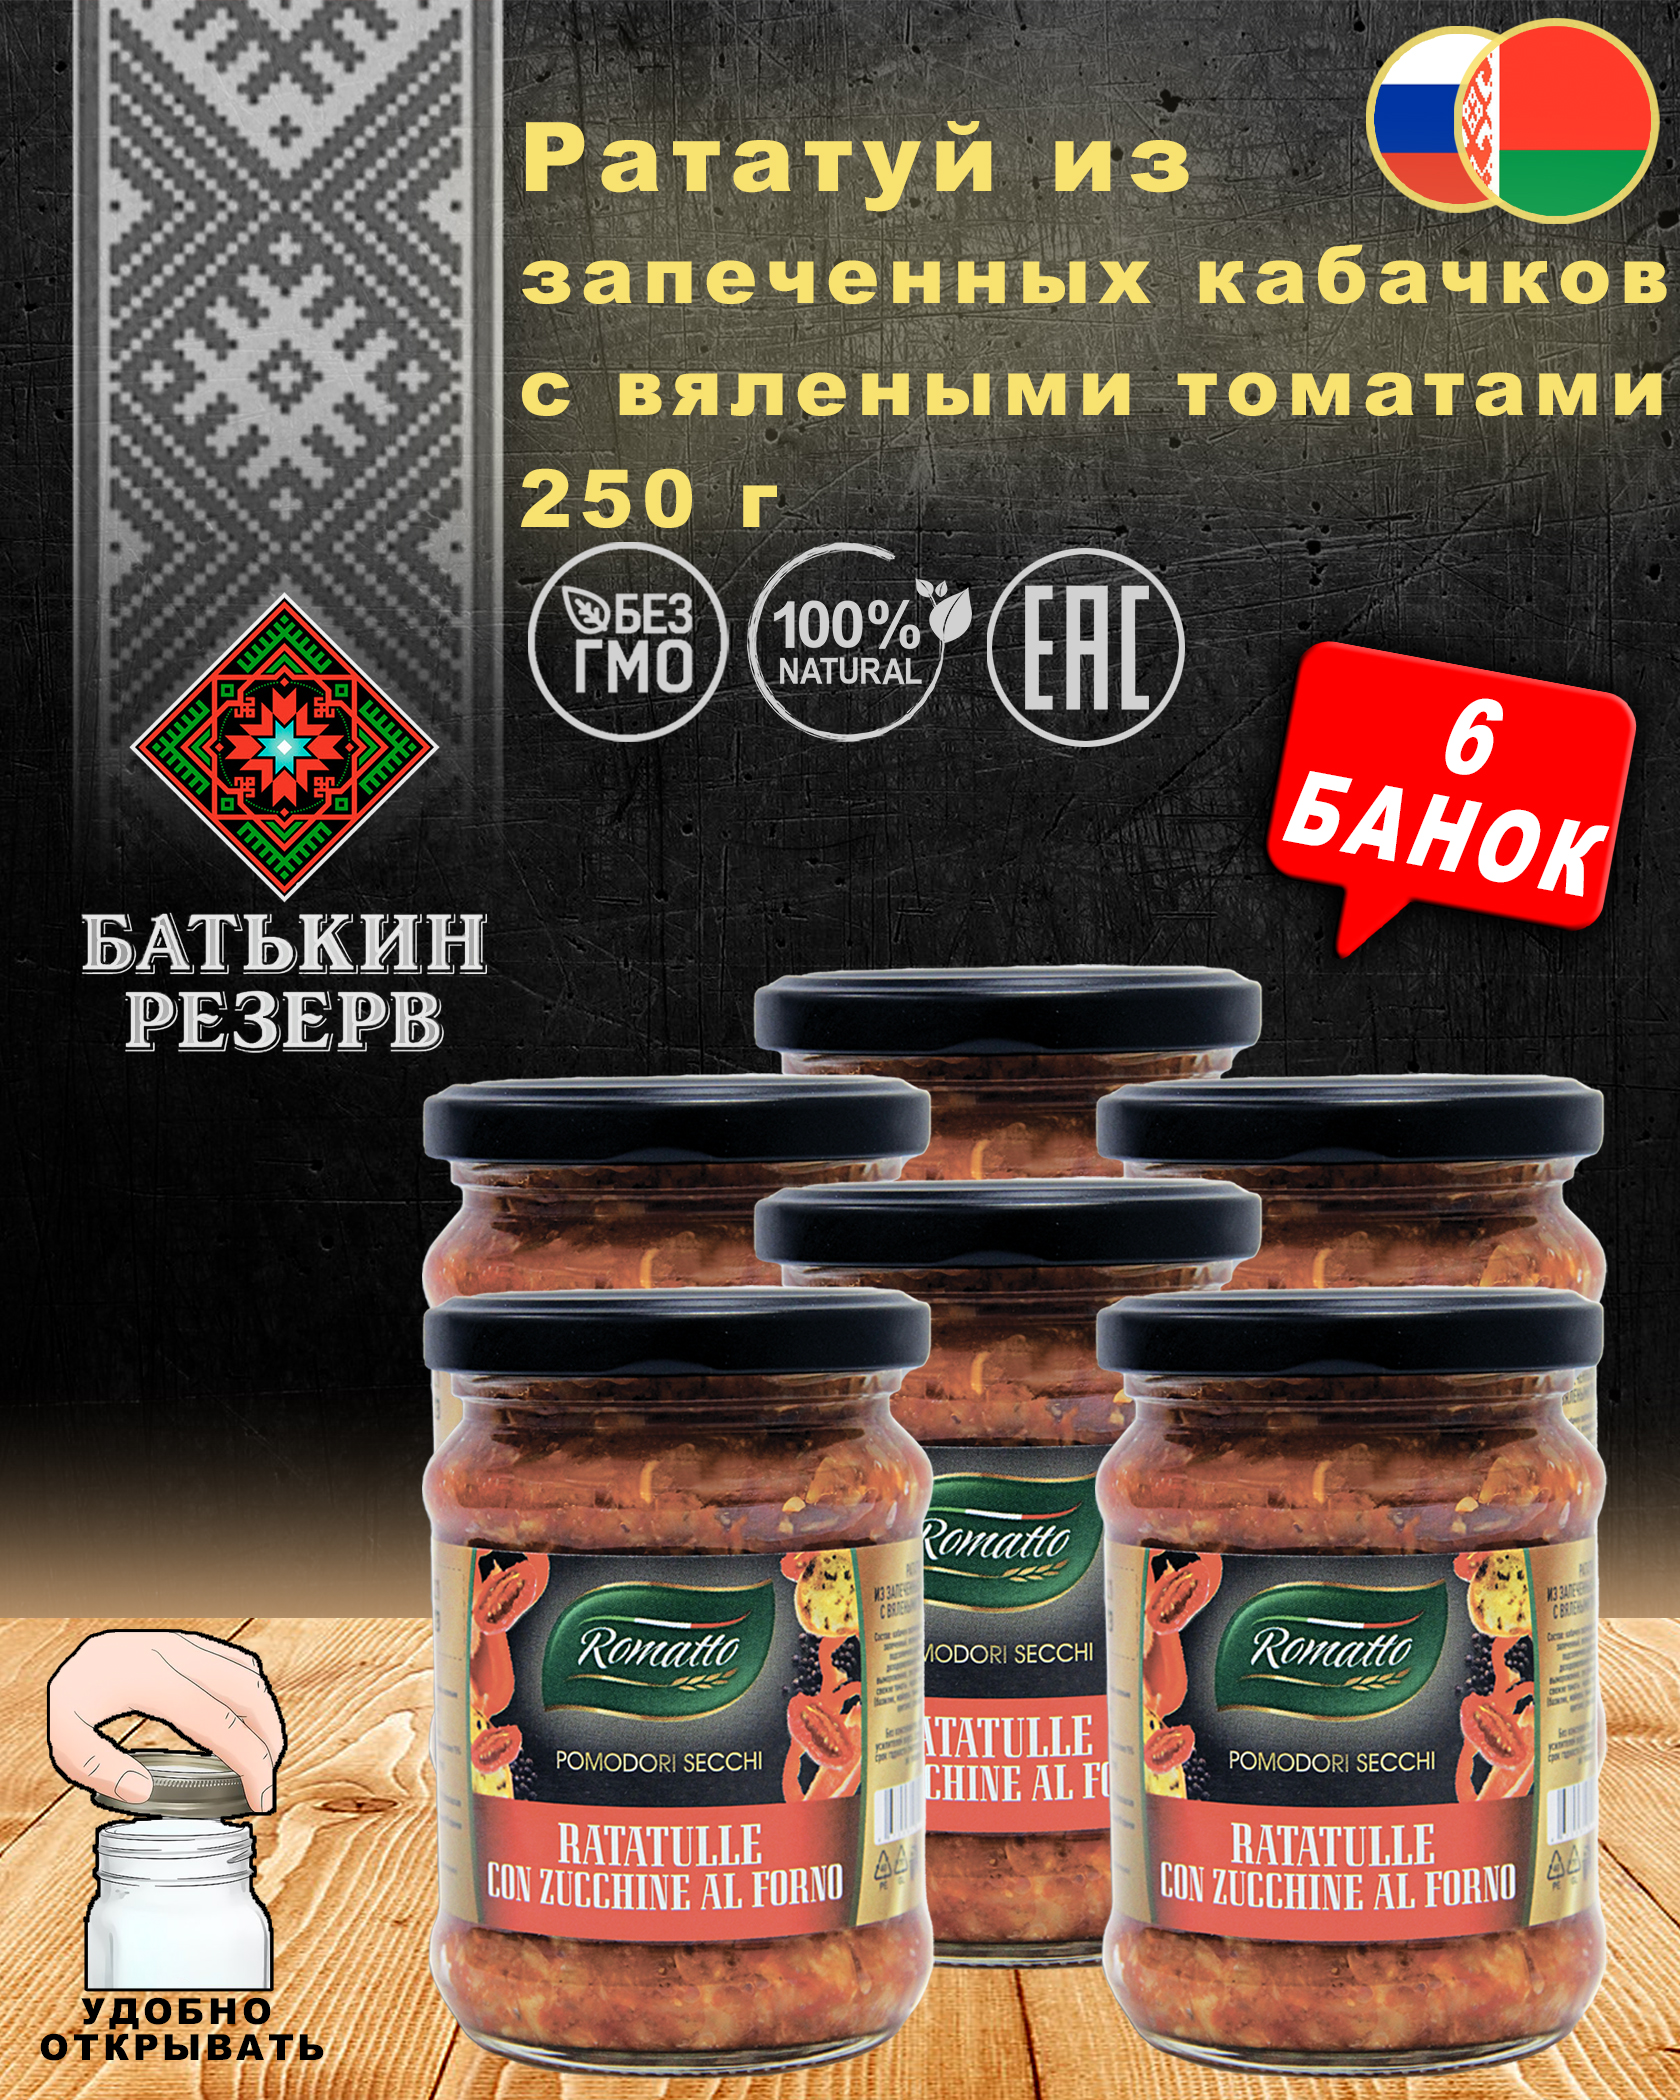 Рататуй из запеченных кабачков с вялеными томатами, Romatto, ТУ, 6 шт. по 250 г